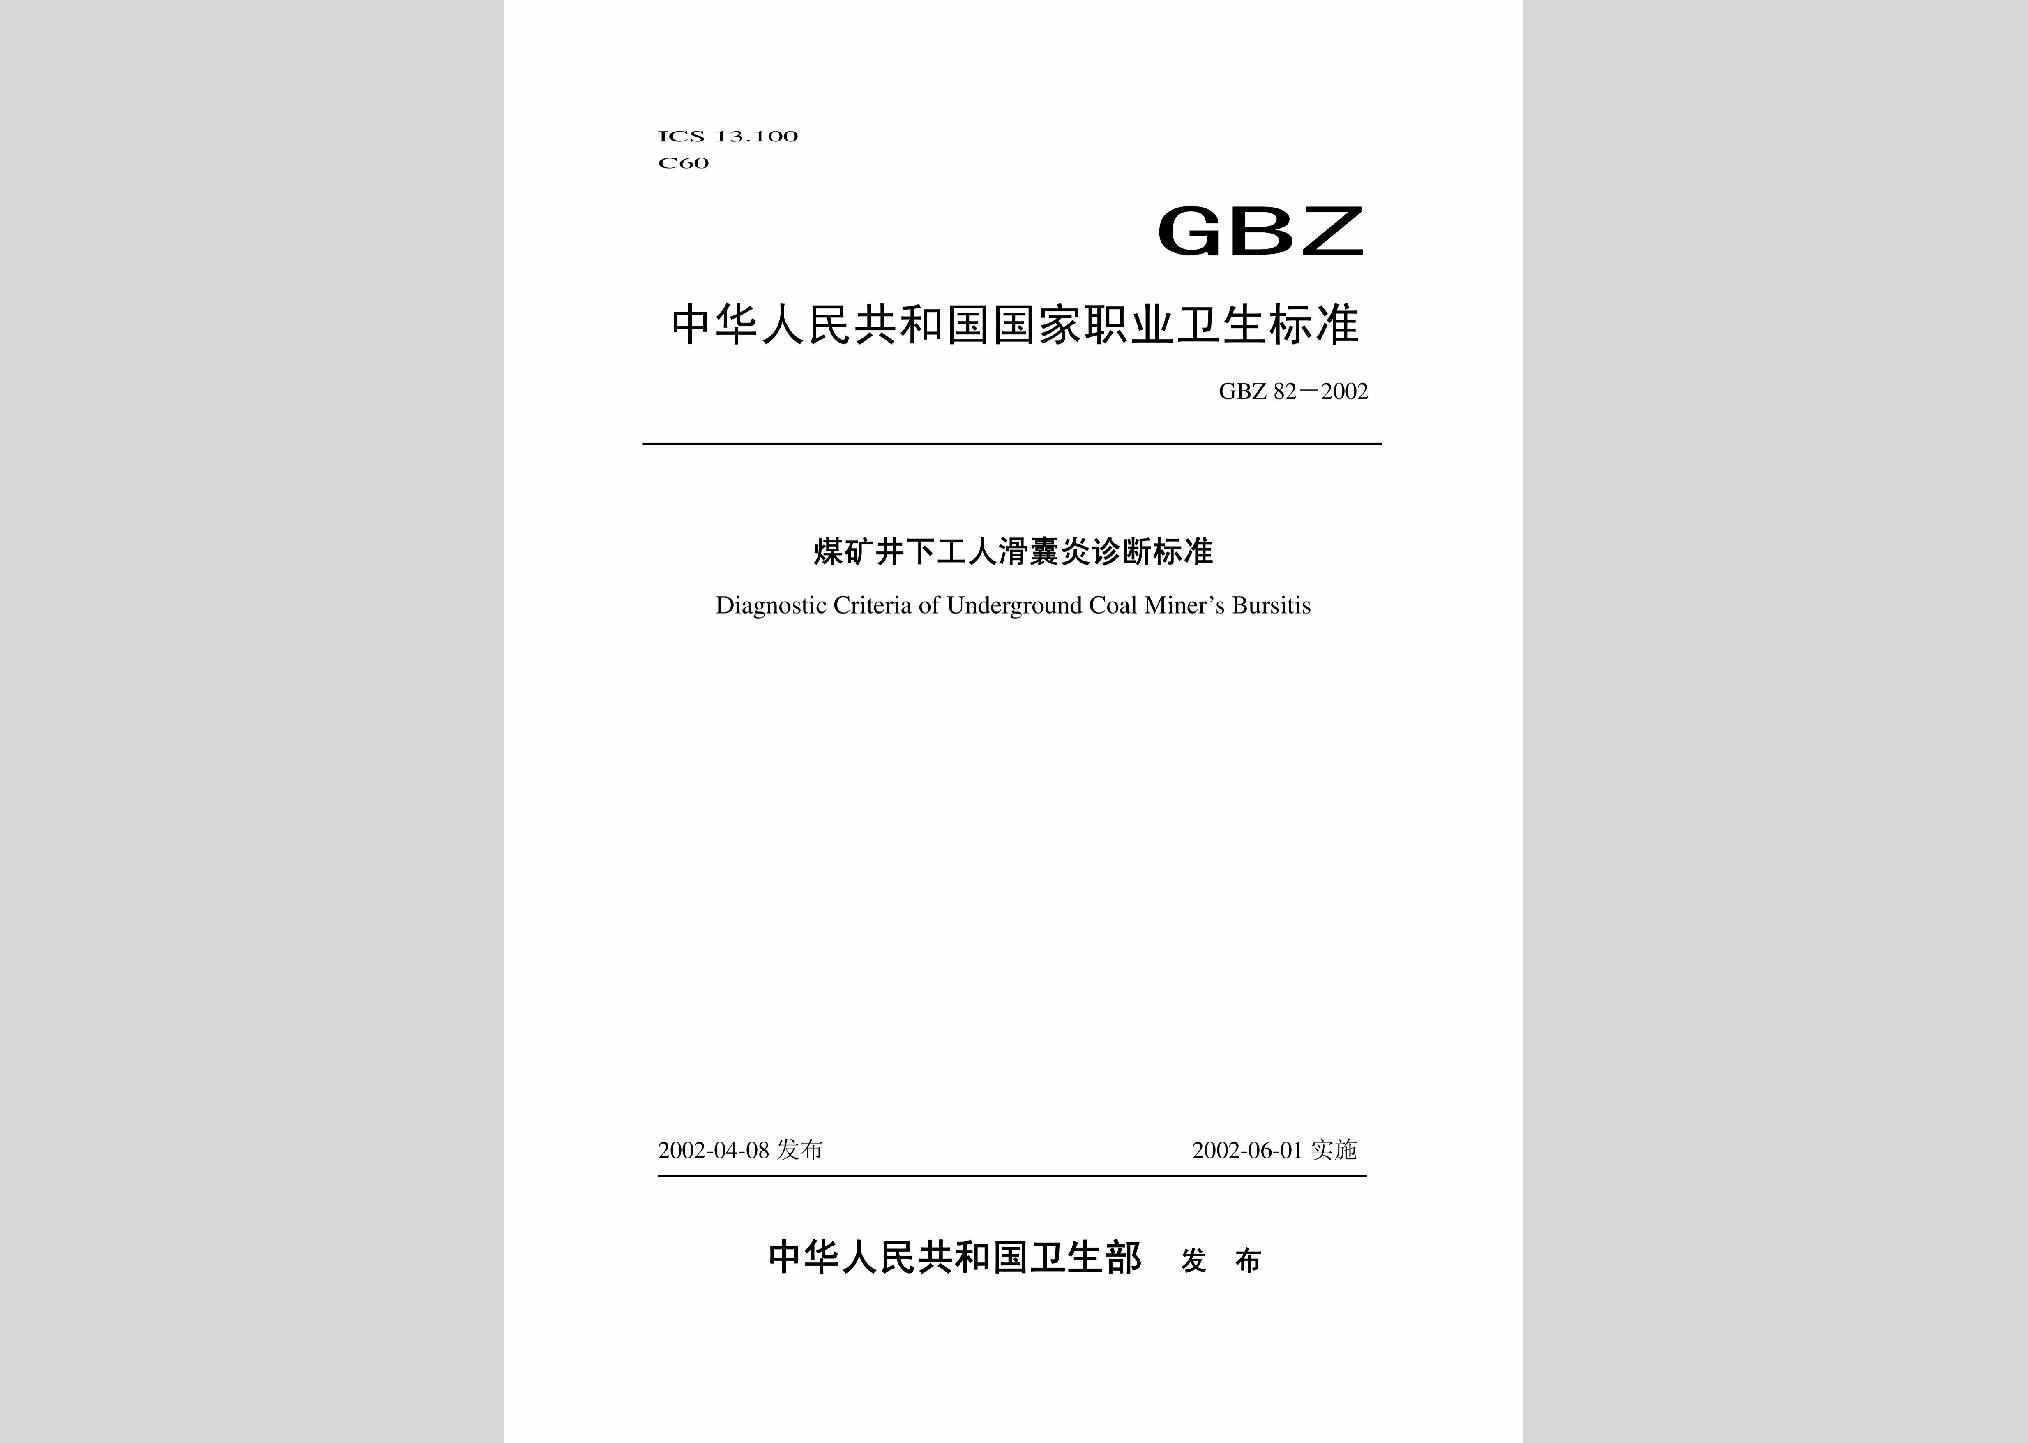 GBZ82-2002：煤矿井下工人滑囊炎诊断标准